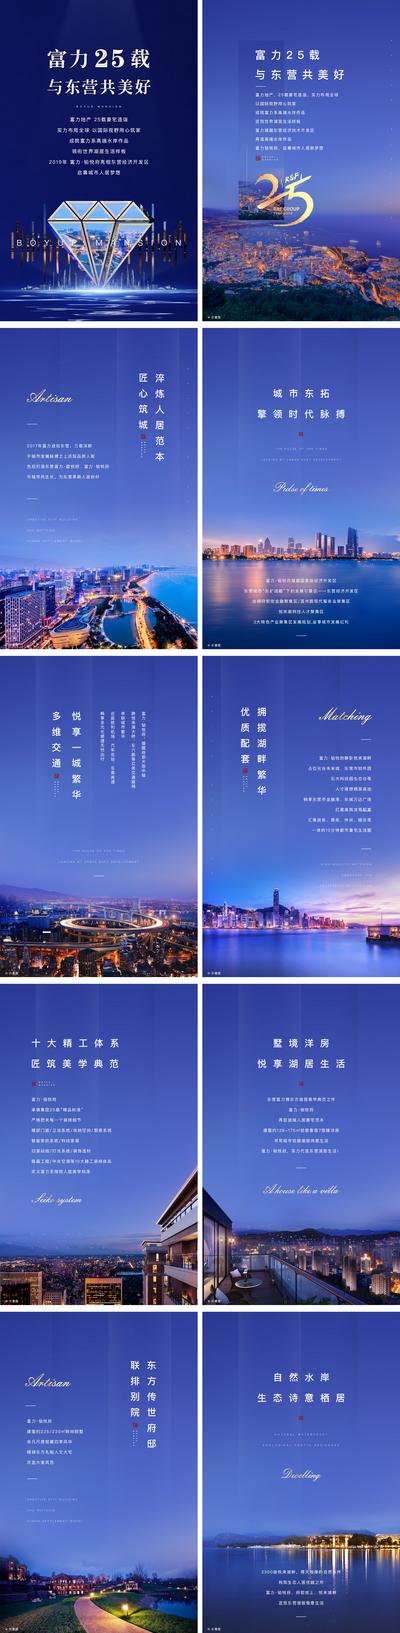 南门网 专题设计 H5 房地产 品牌 湖居 洋房 交通 价值点 繁华 高端 城市 钻石 蓝色 系列